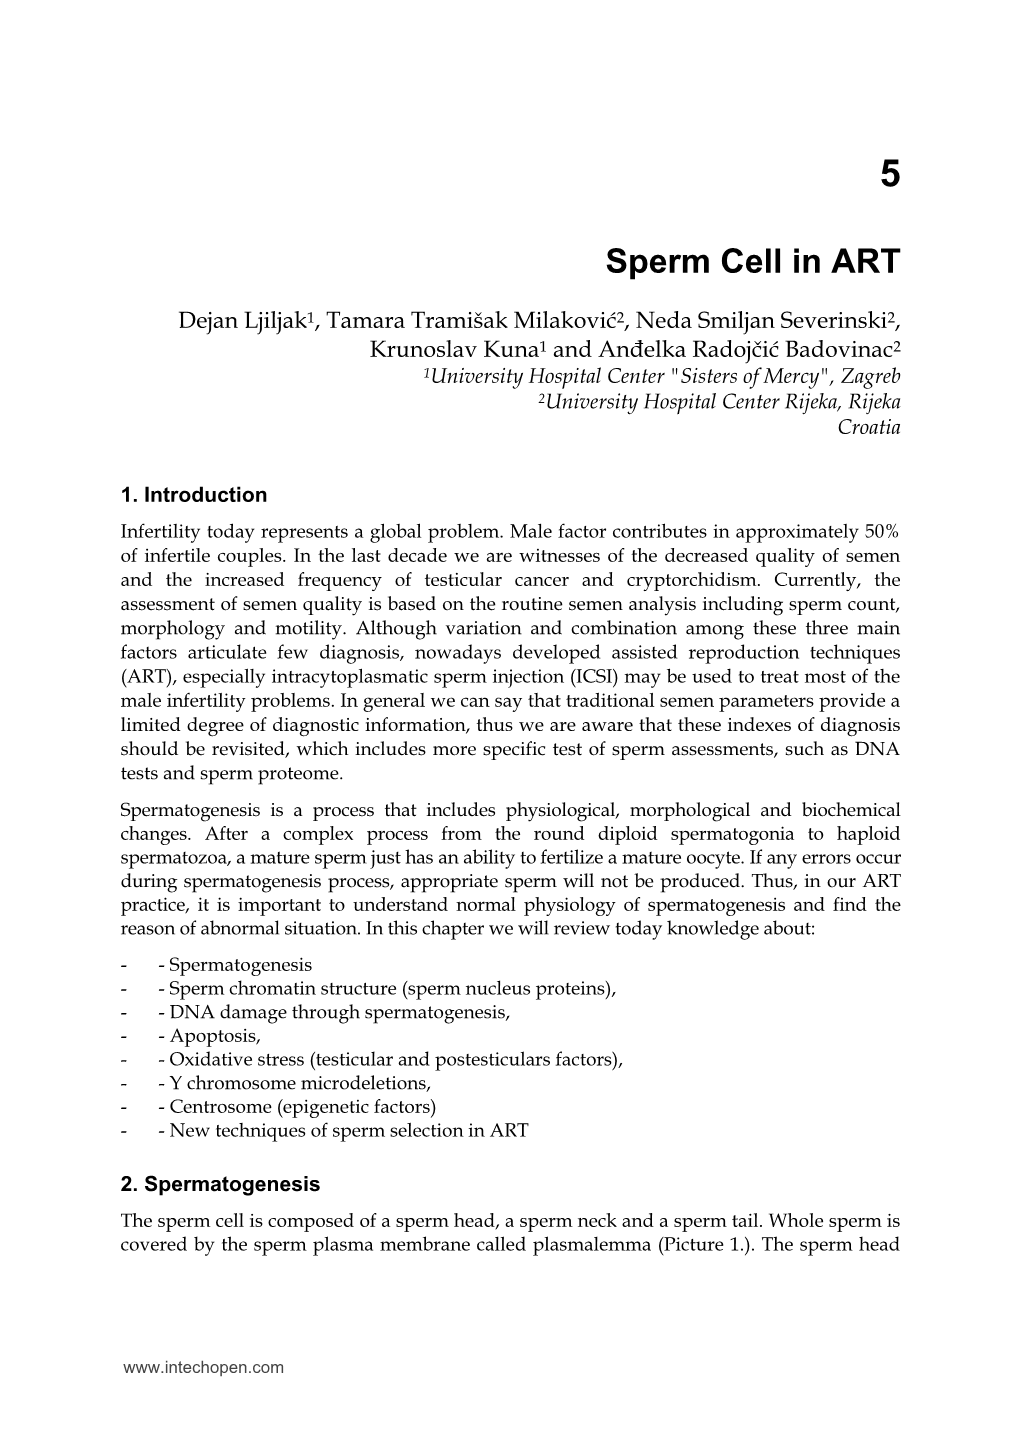 Sperm Cell in ART